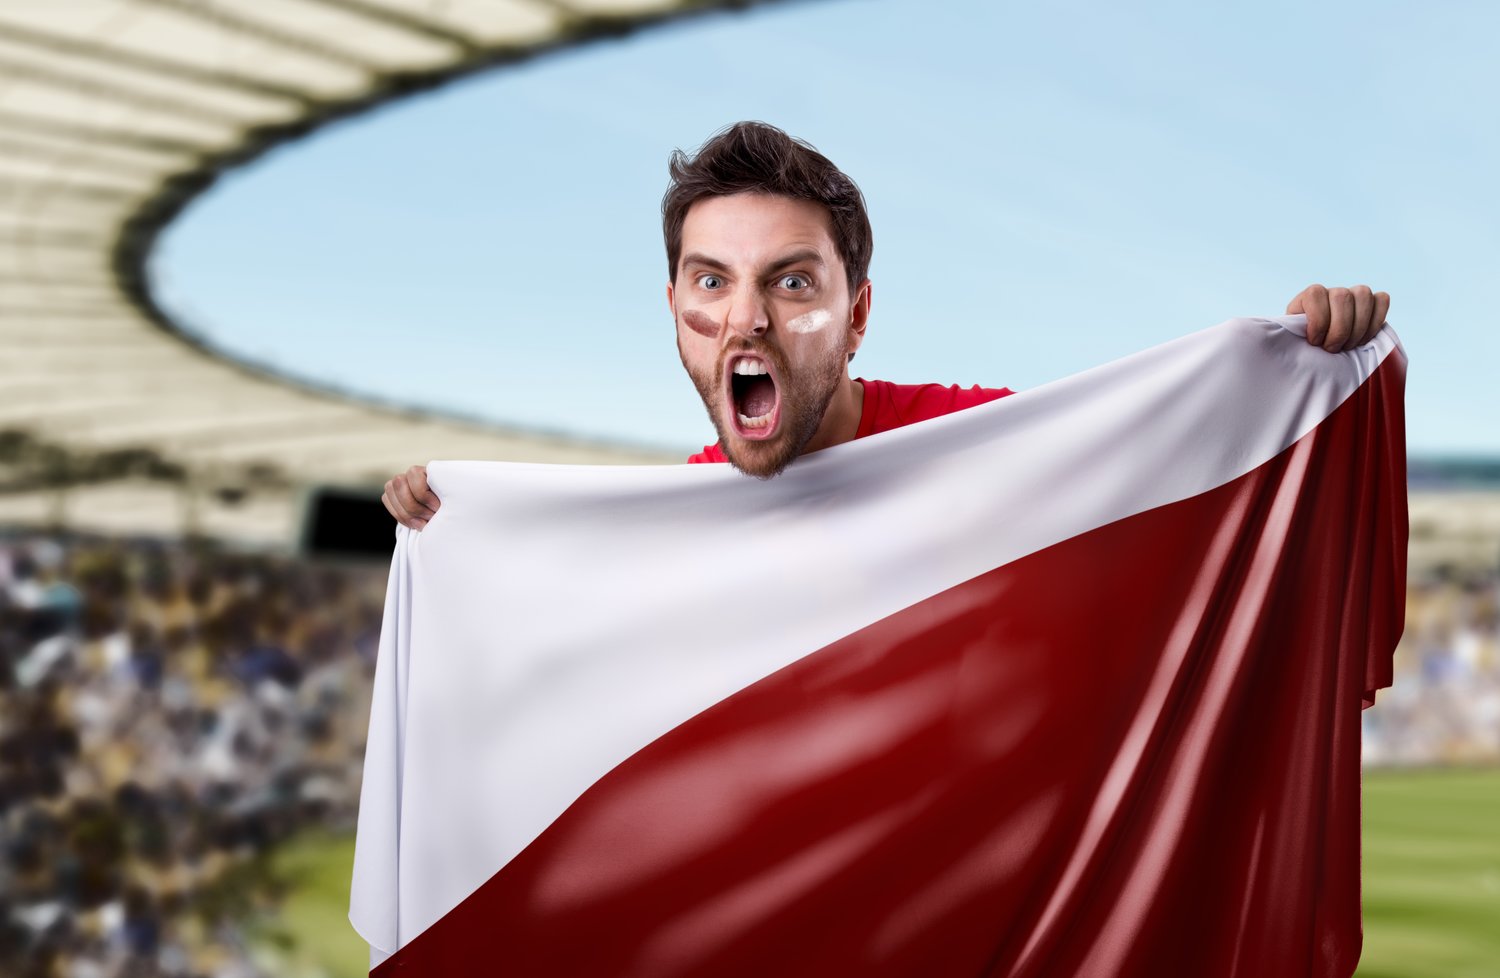 Piłka nożna: Mistrzostwa Świata w Rosji 2018. Czy Polacy dadzą radę?